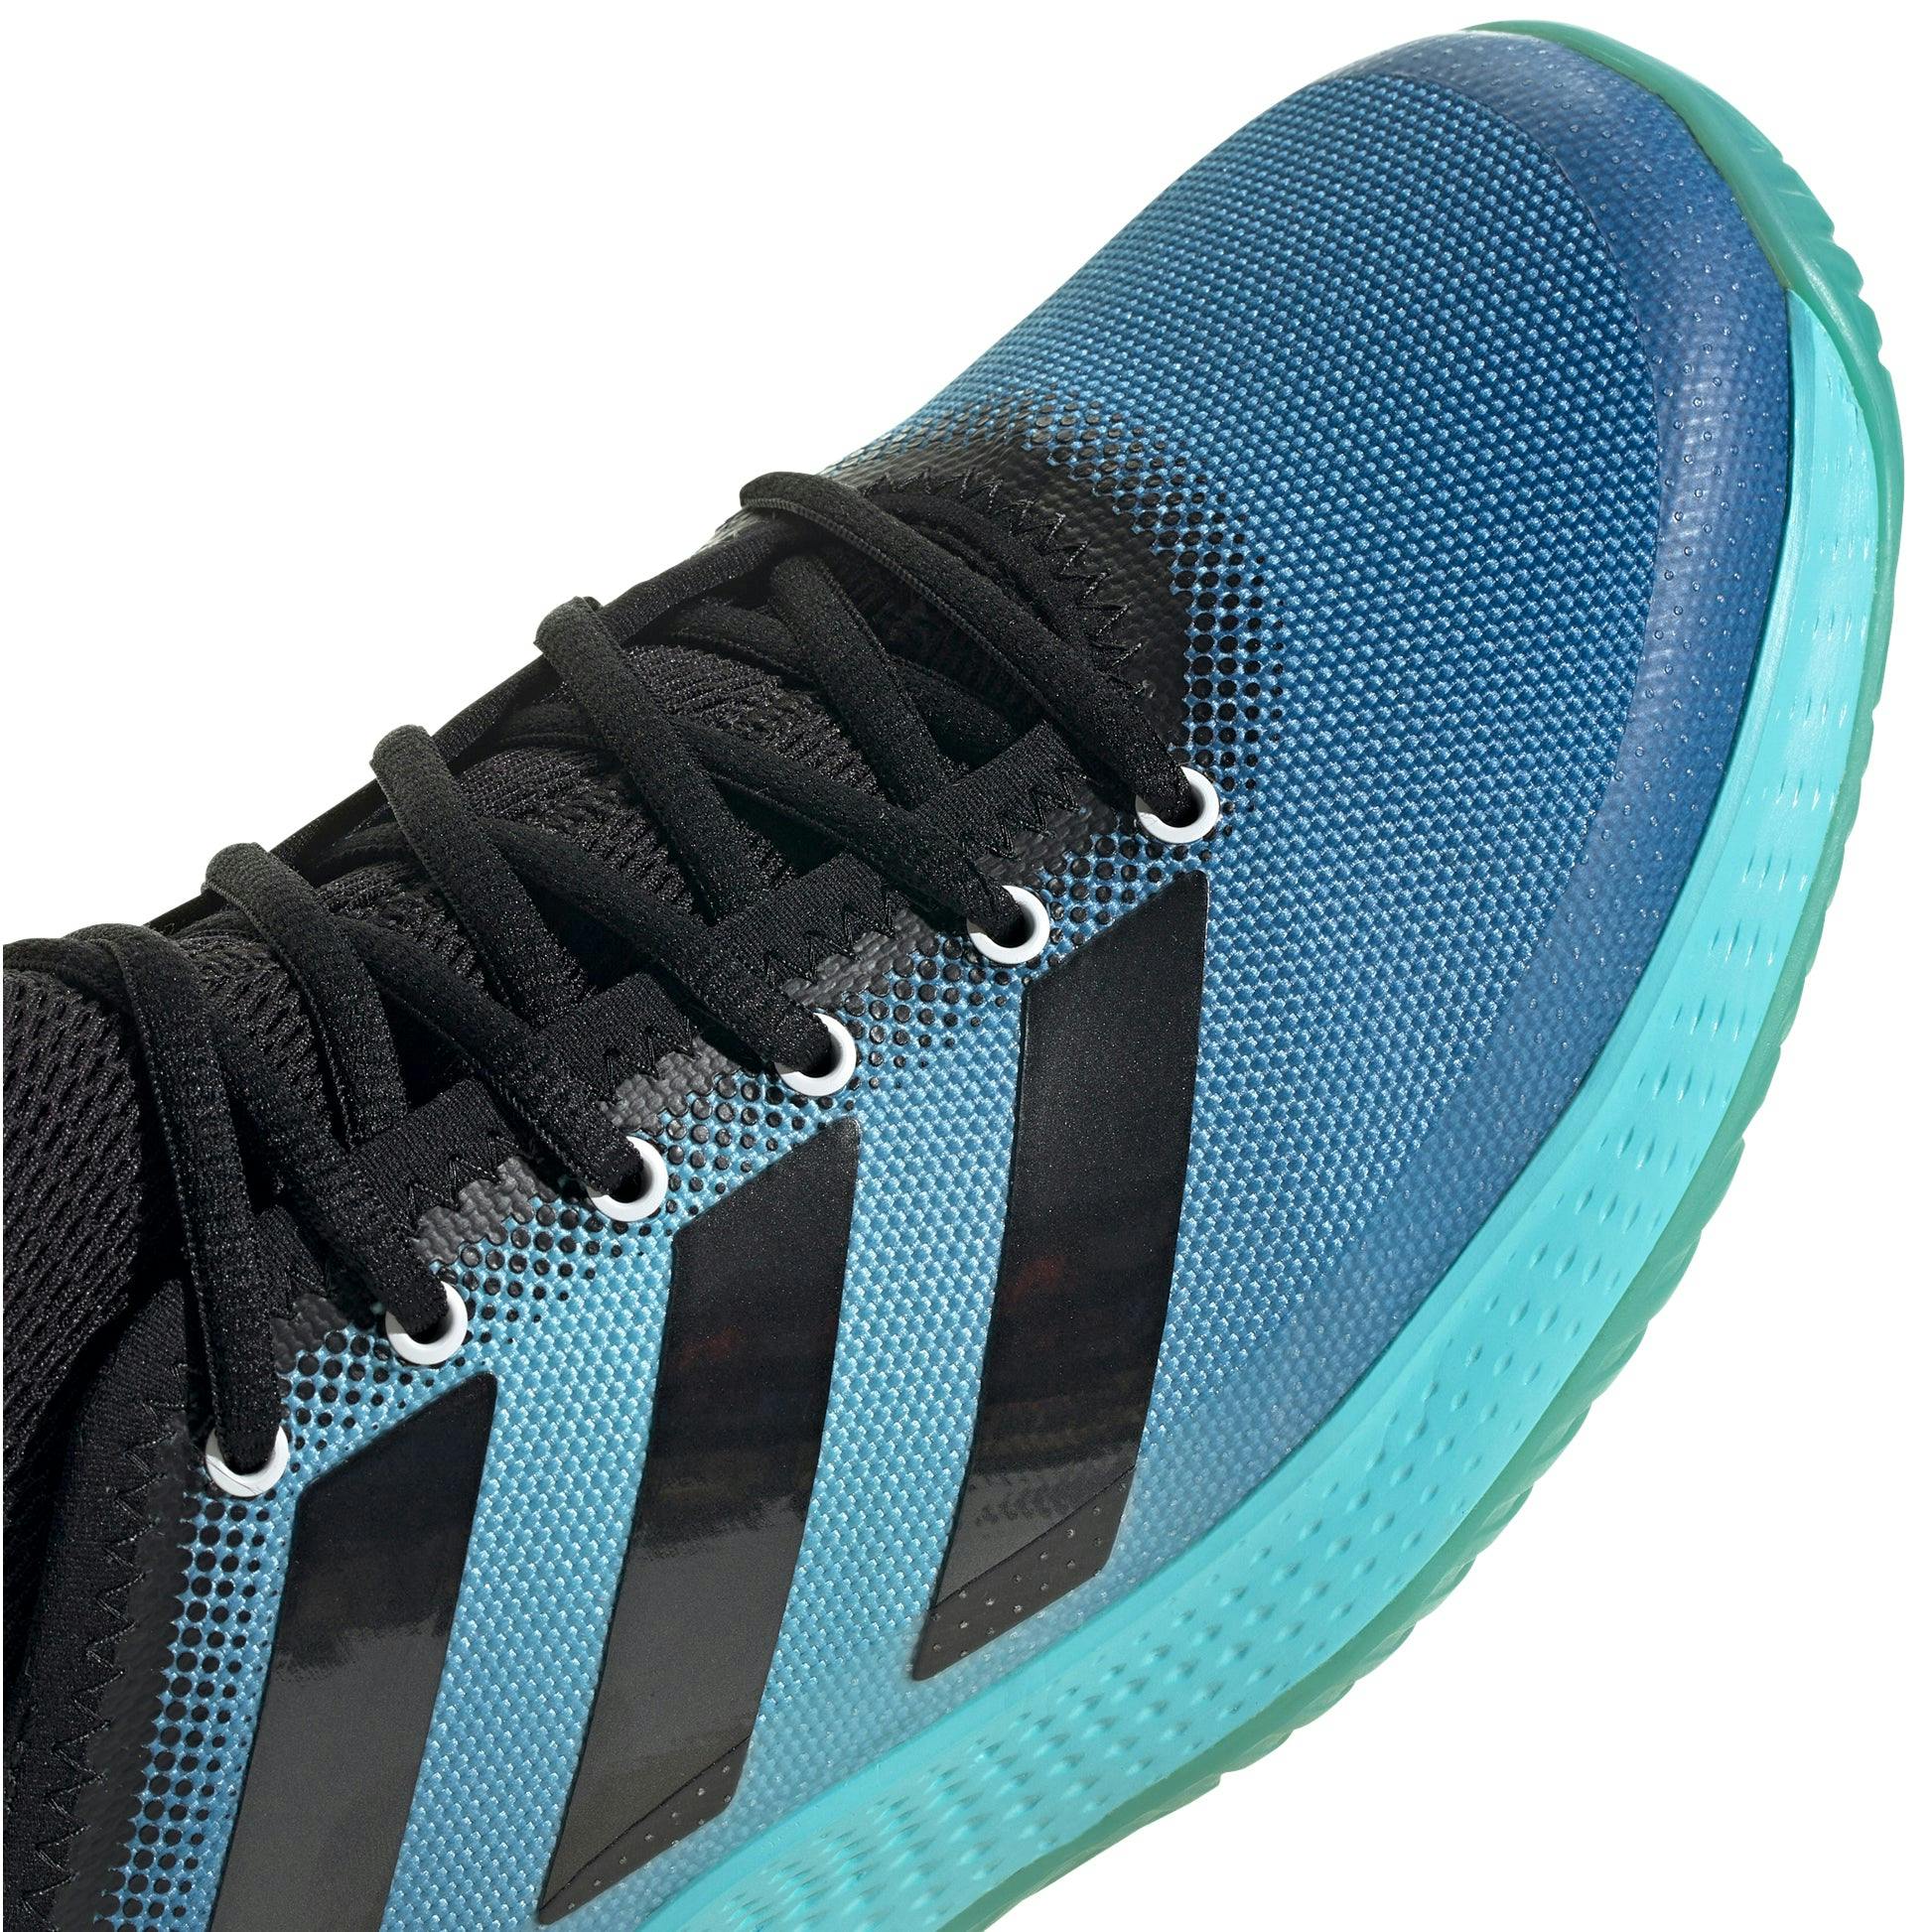 Adidas Defiant Generation Aqua Mens Tennis Shoes - AQUA/BK/BL 448 / D Medium / 8.5